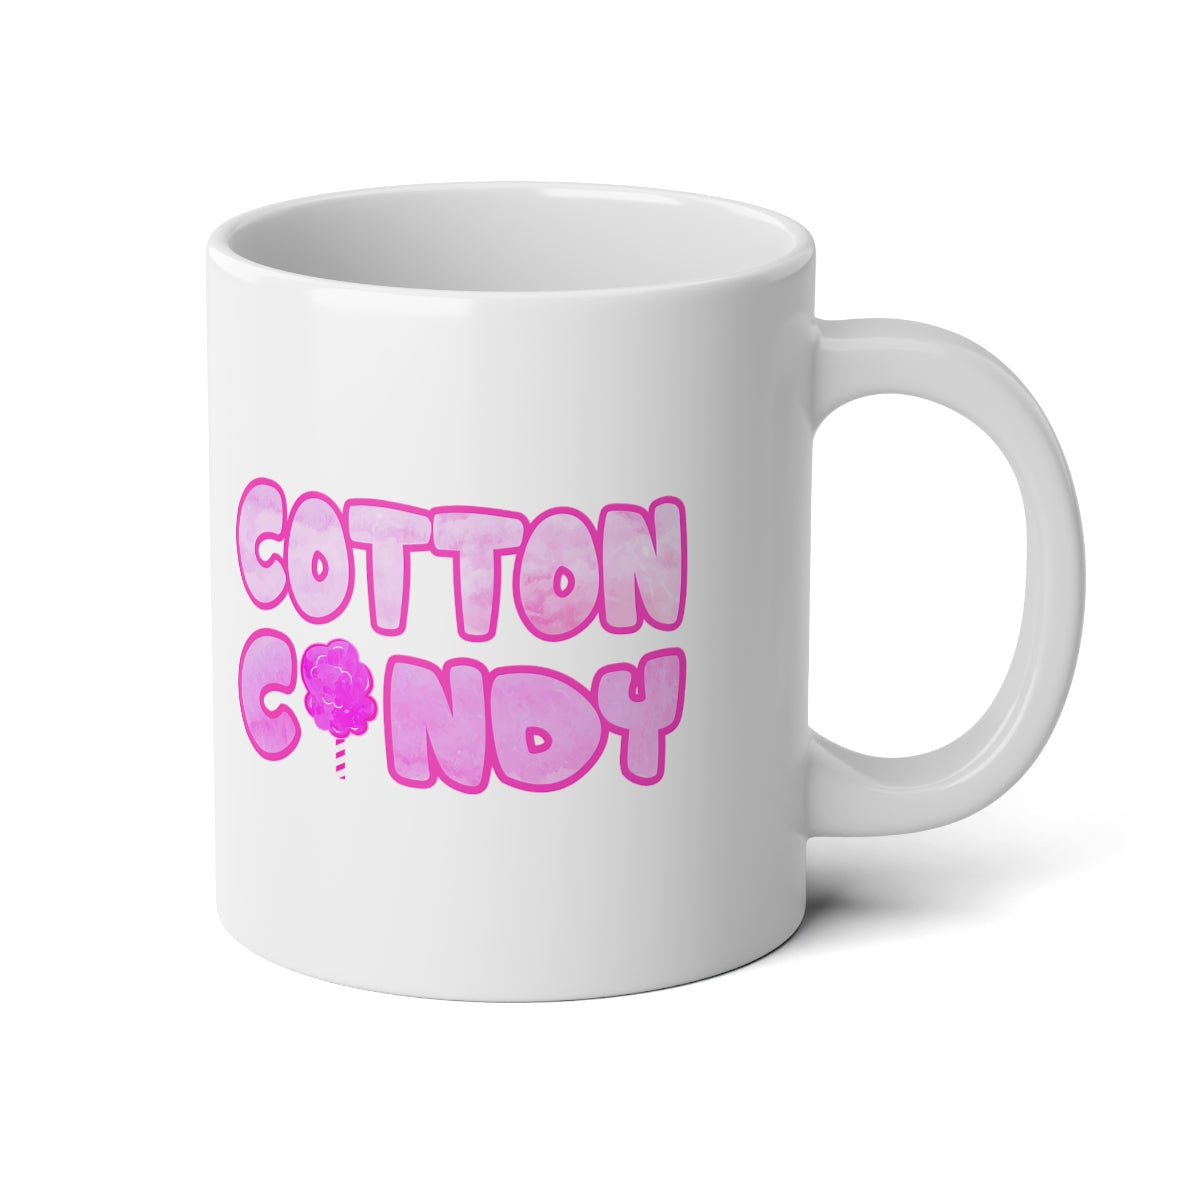 Cotton Candy Jumbo Mug, 20oz